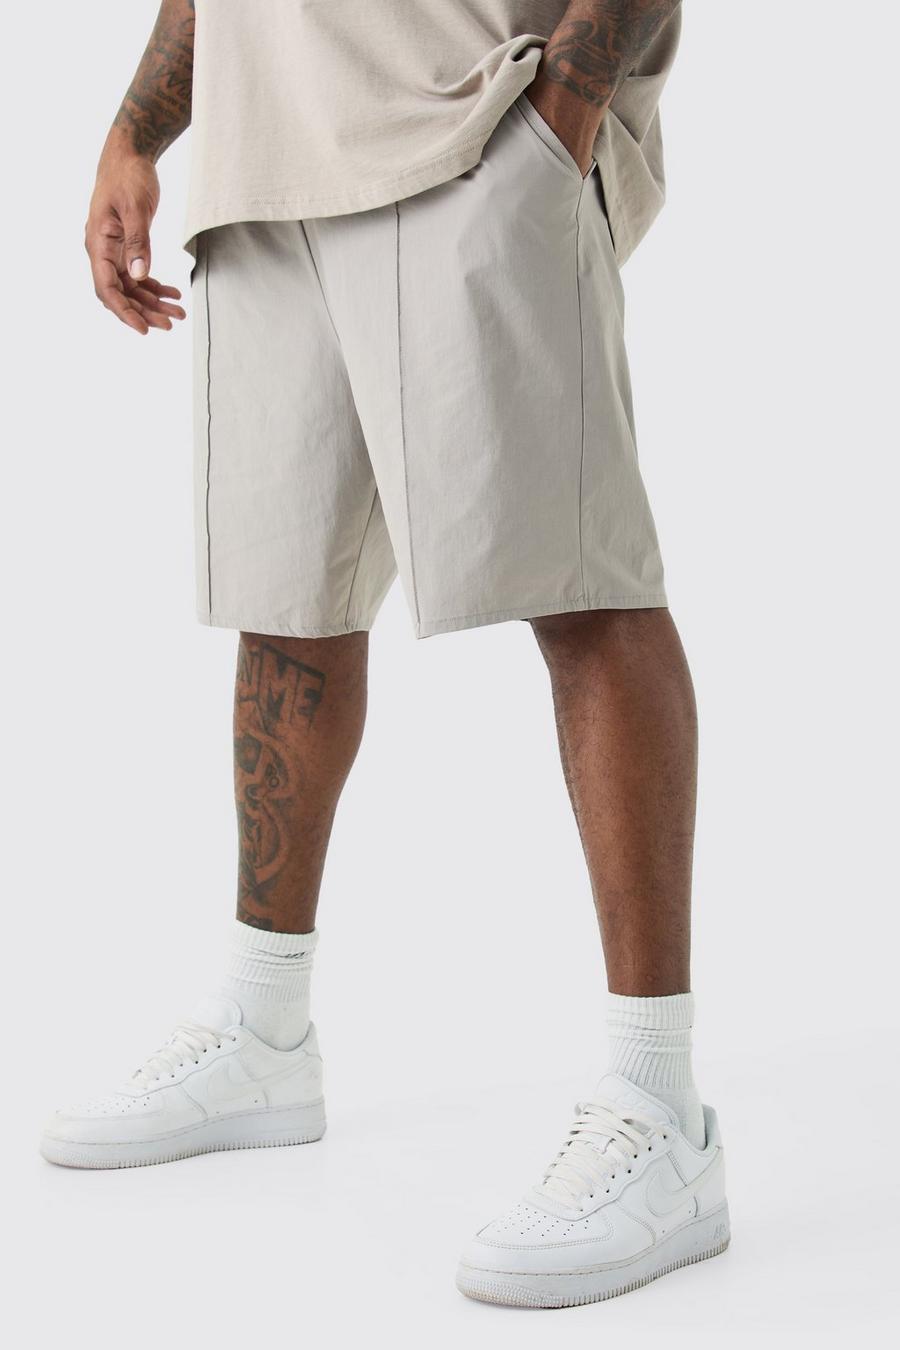 Pantaloncini Plus Size in nylon con vita elasticizzata, cuciture e nervature, Grey